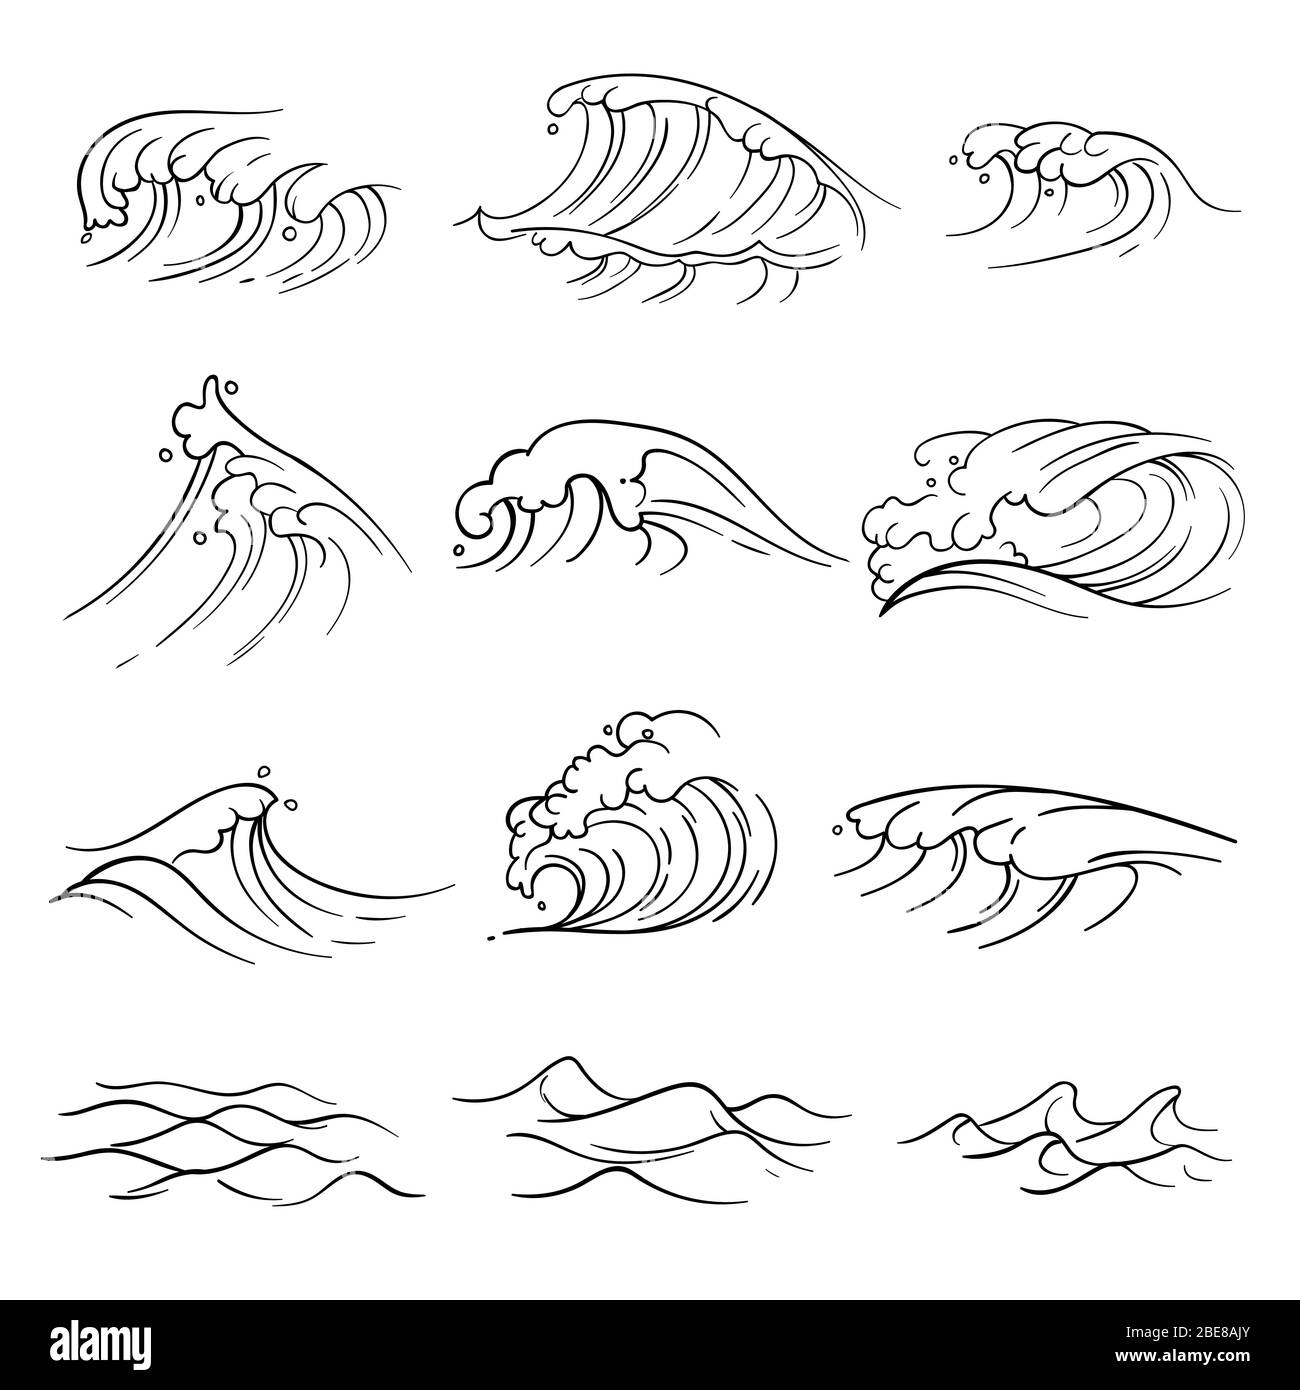 Handgezeichneter Vektor für Wellen des Ozeans. Meeressturmwelle isoliert.  Natur Welle Wasser Sturm lineare Stil Illustration Stock-Vektorgrafik -  Alamy